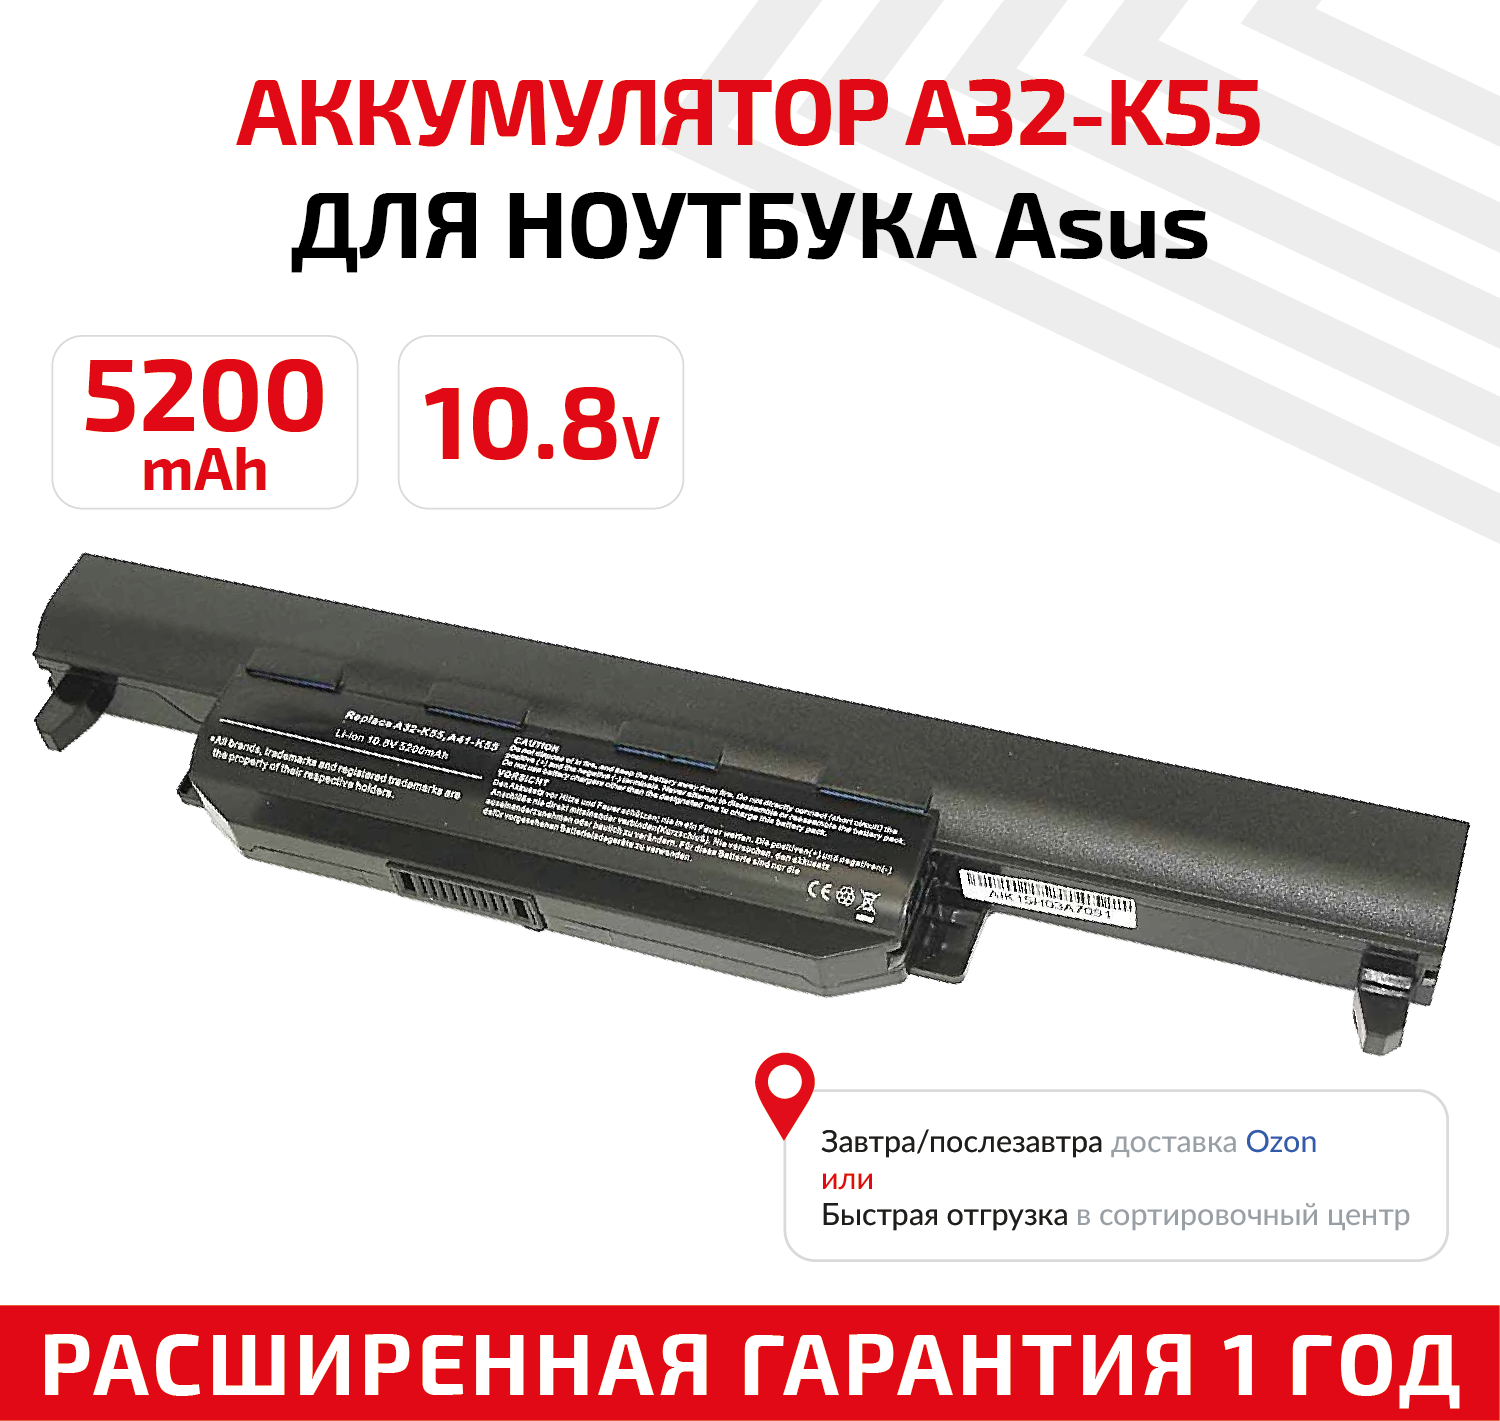 Аккумулятор (АКБ аккумуляторная батарея) A32-K55 для ноутбука Asus K55 10.8В 5200мАч